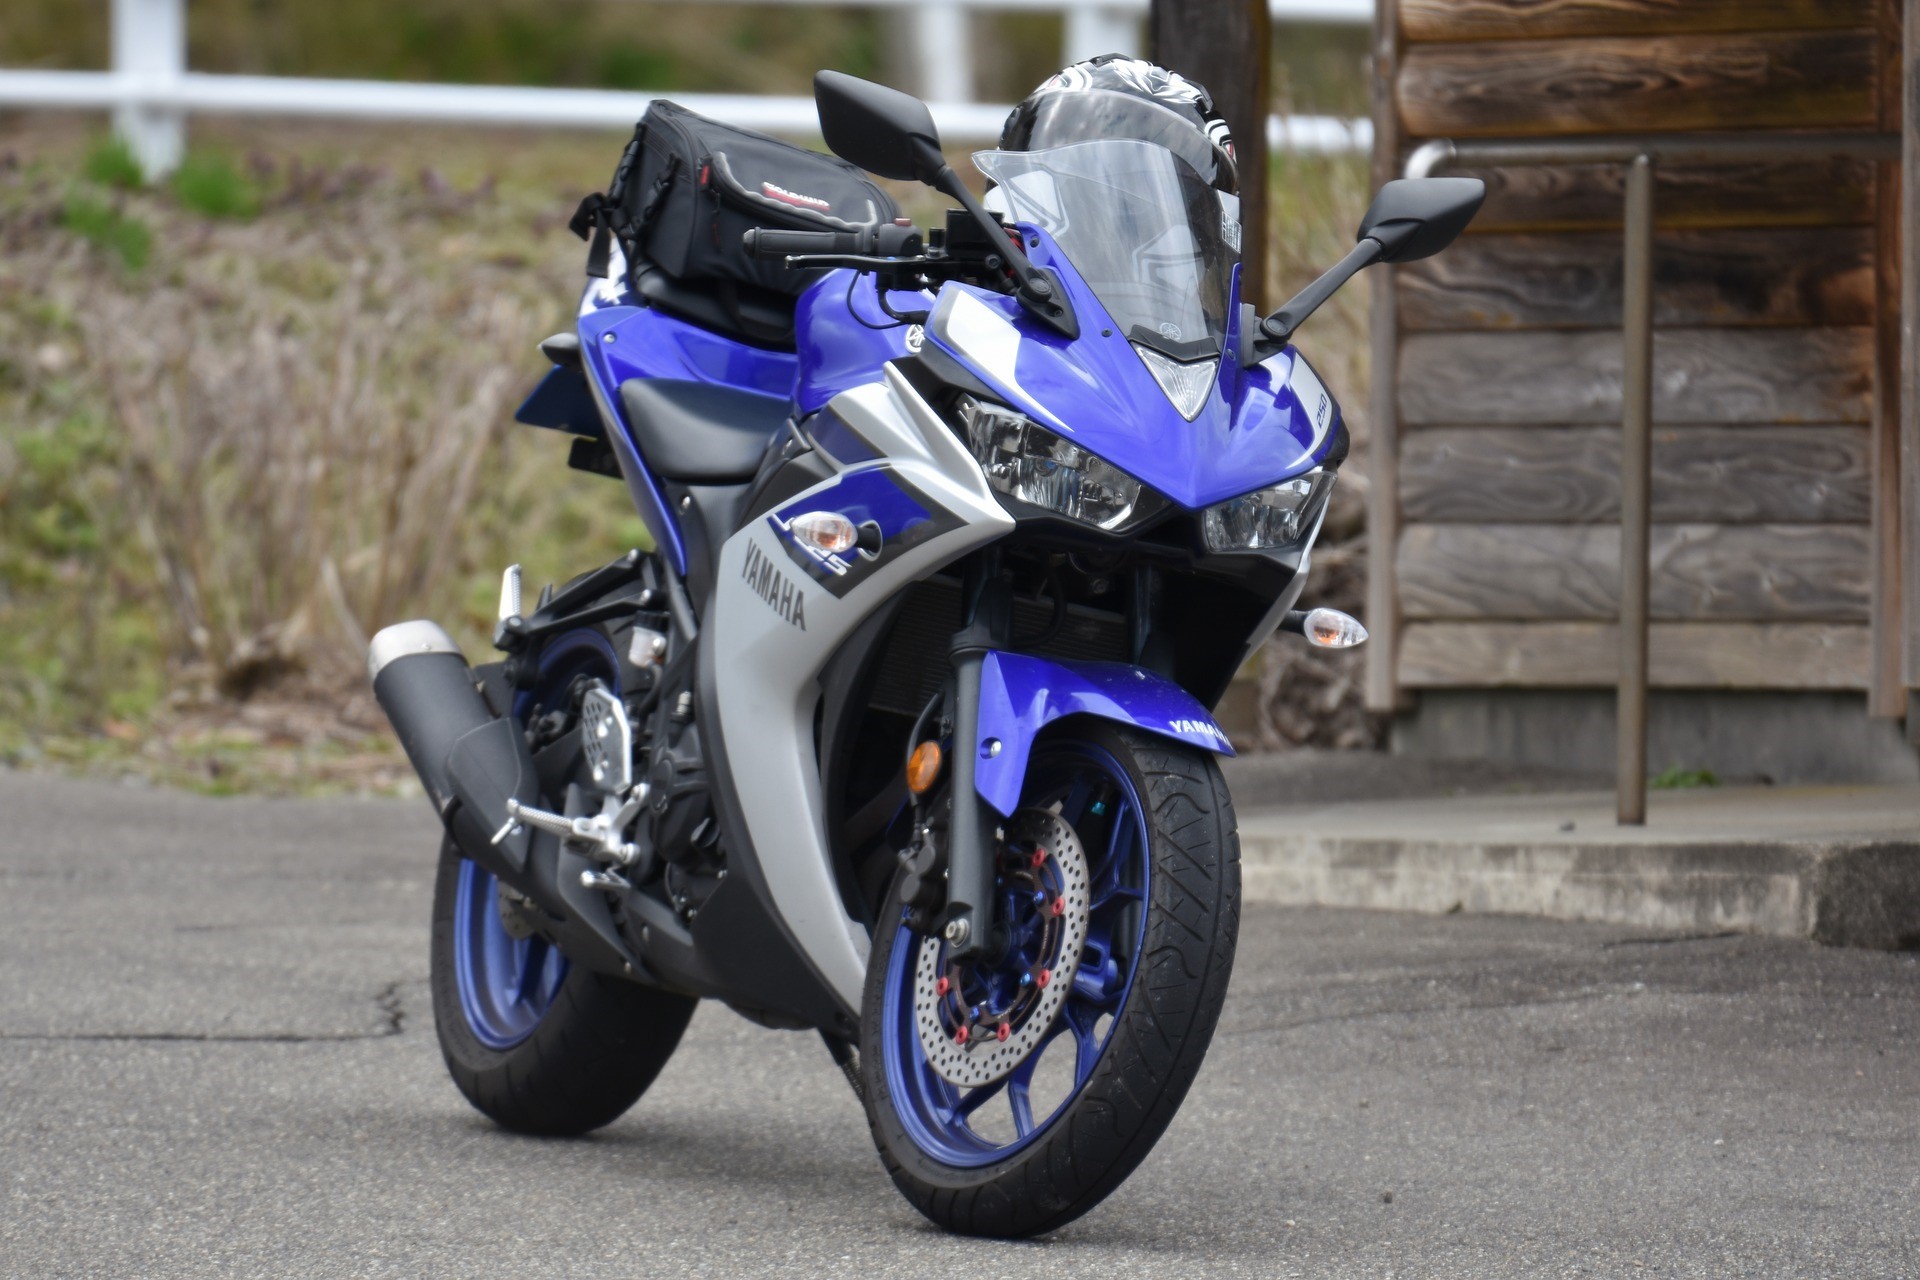 Yamaha Motos 2020 Modelos, Precios y Fichas Técnicas